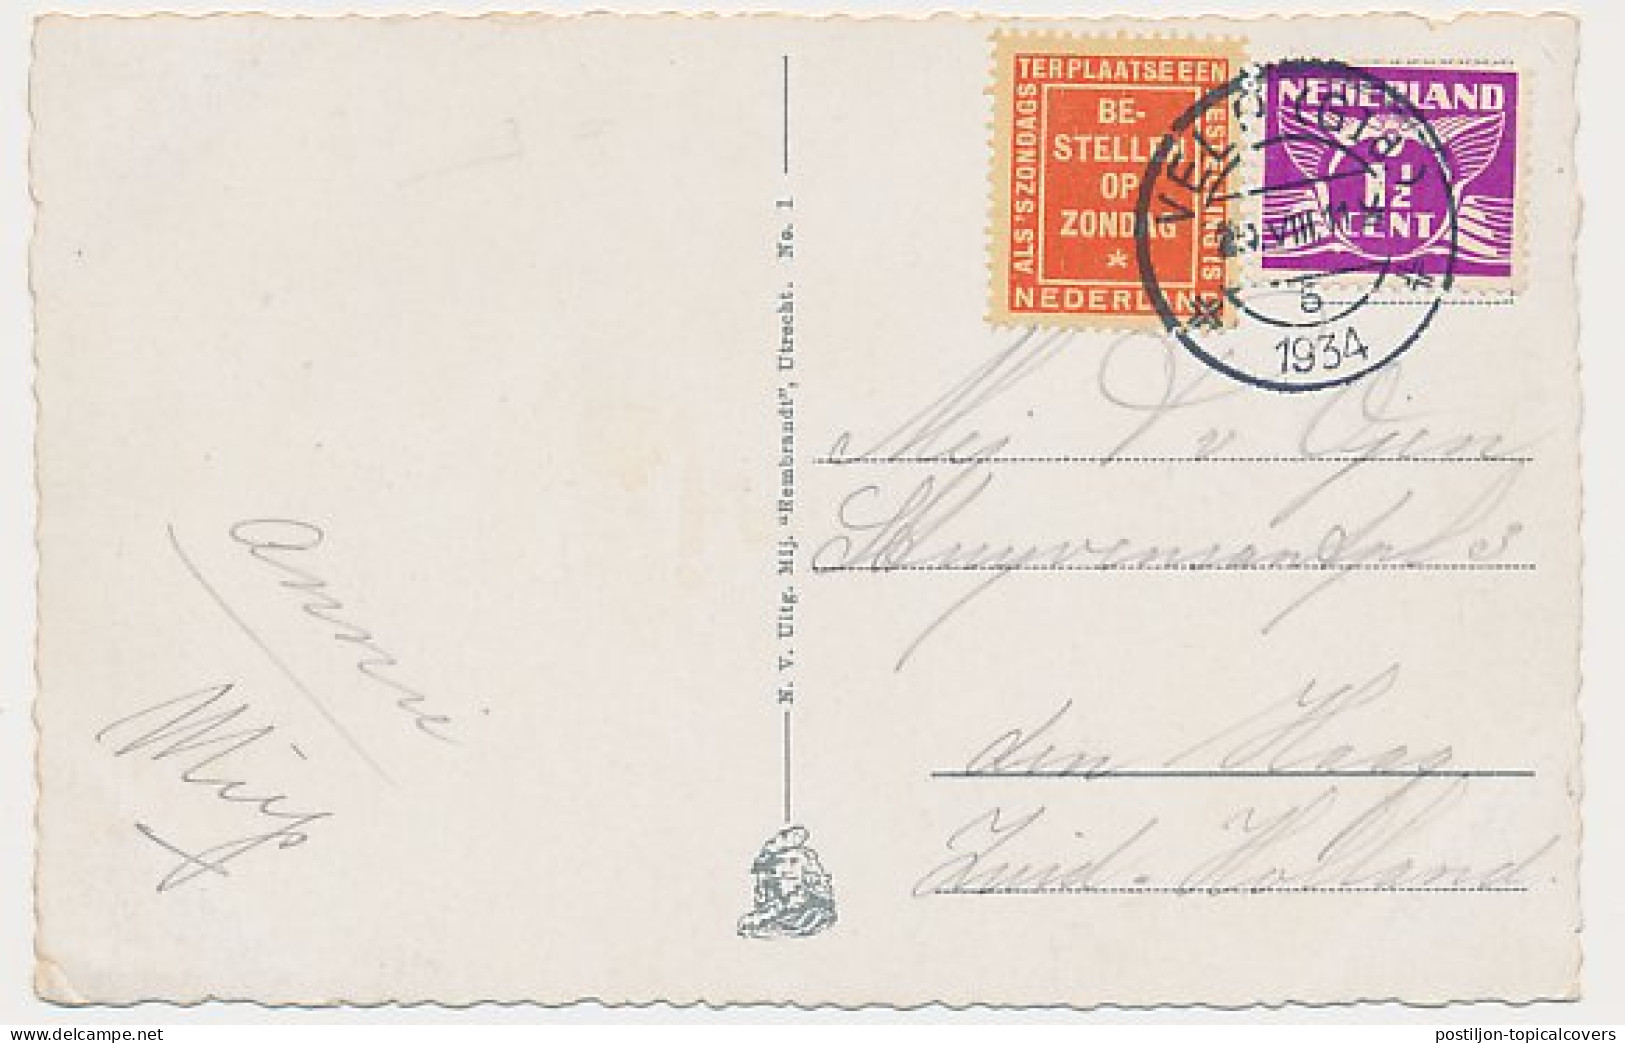 Bestellen Op Zondag - Velp - Den Haag 1934 - Covers & Documents